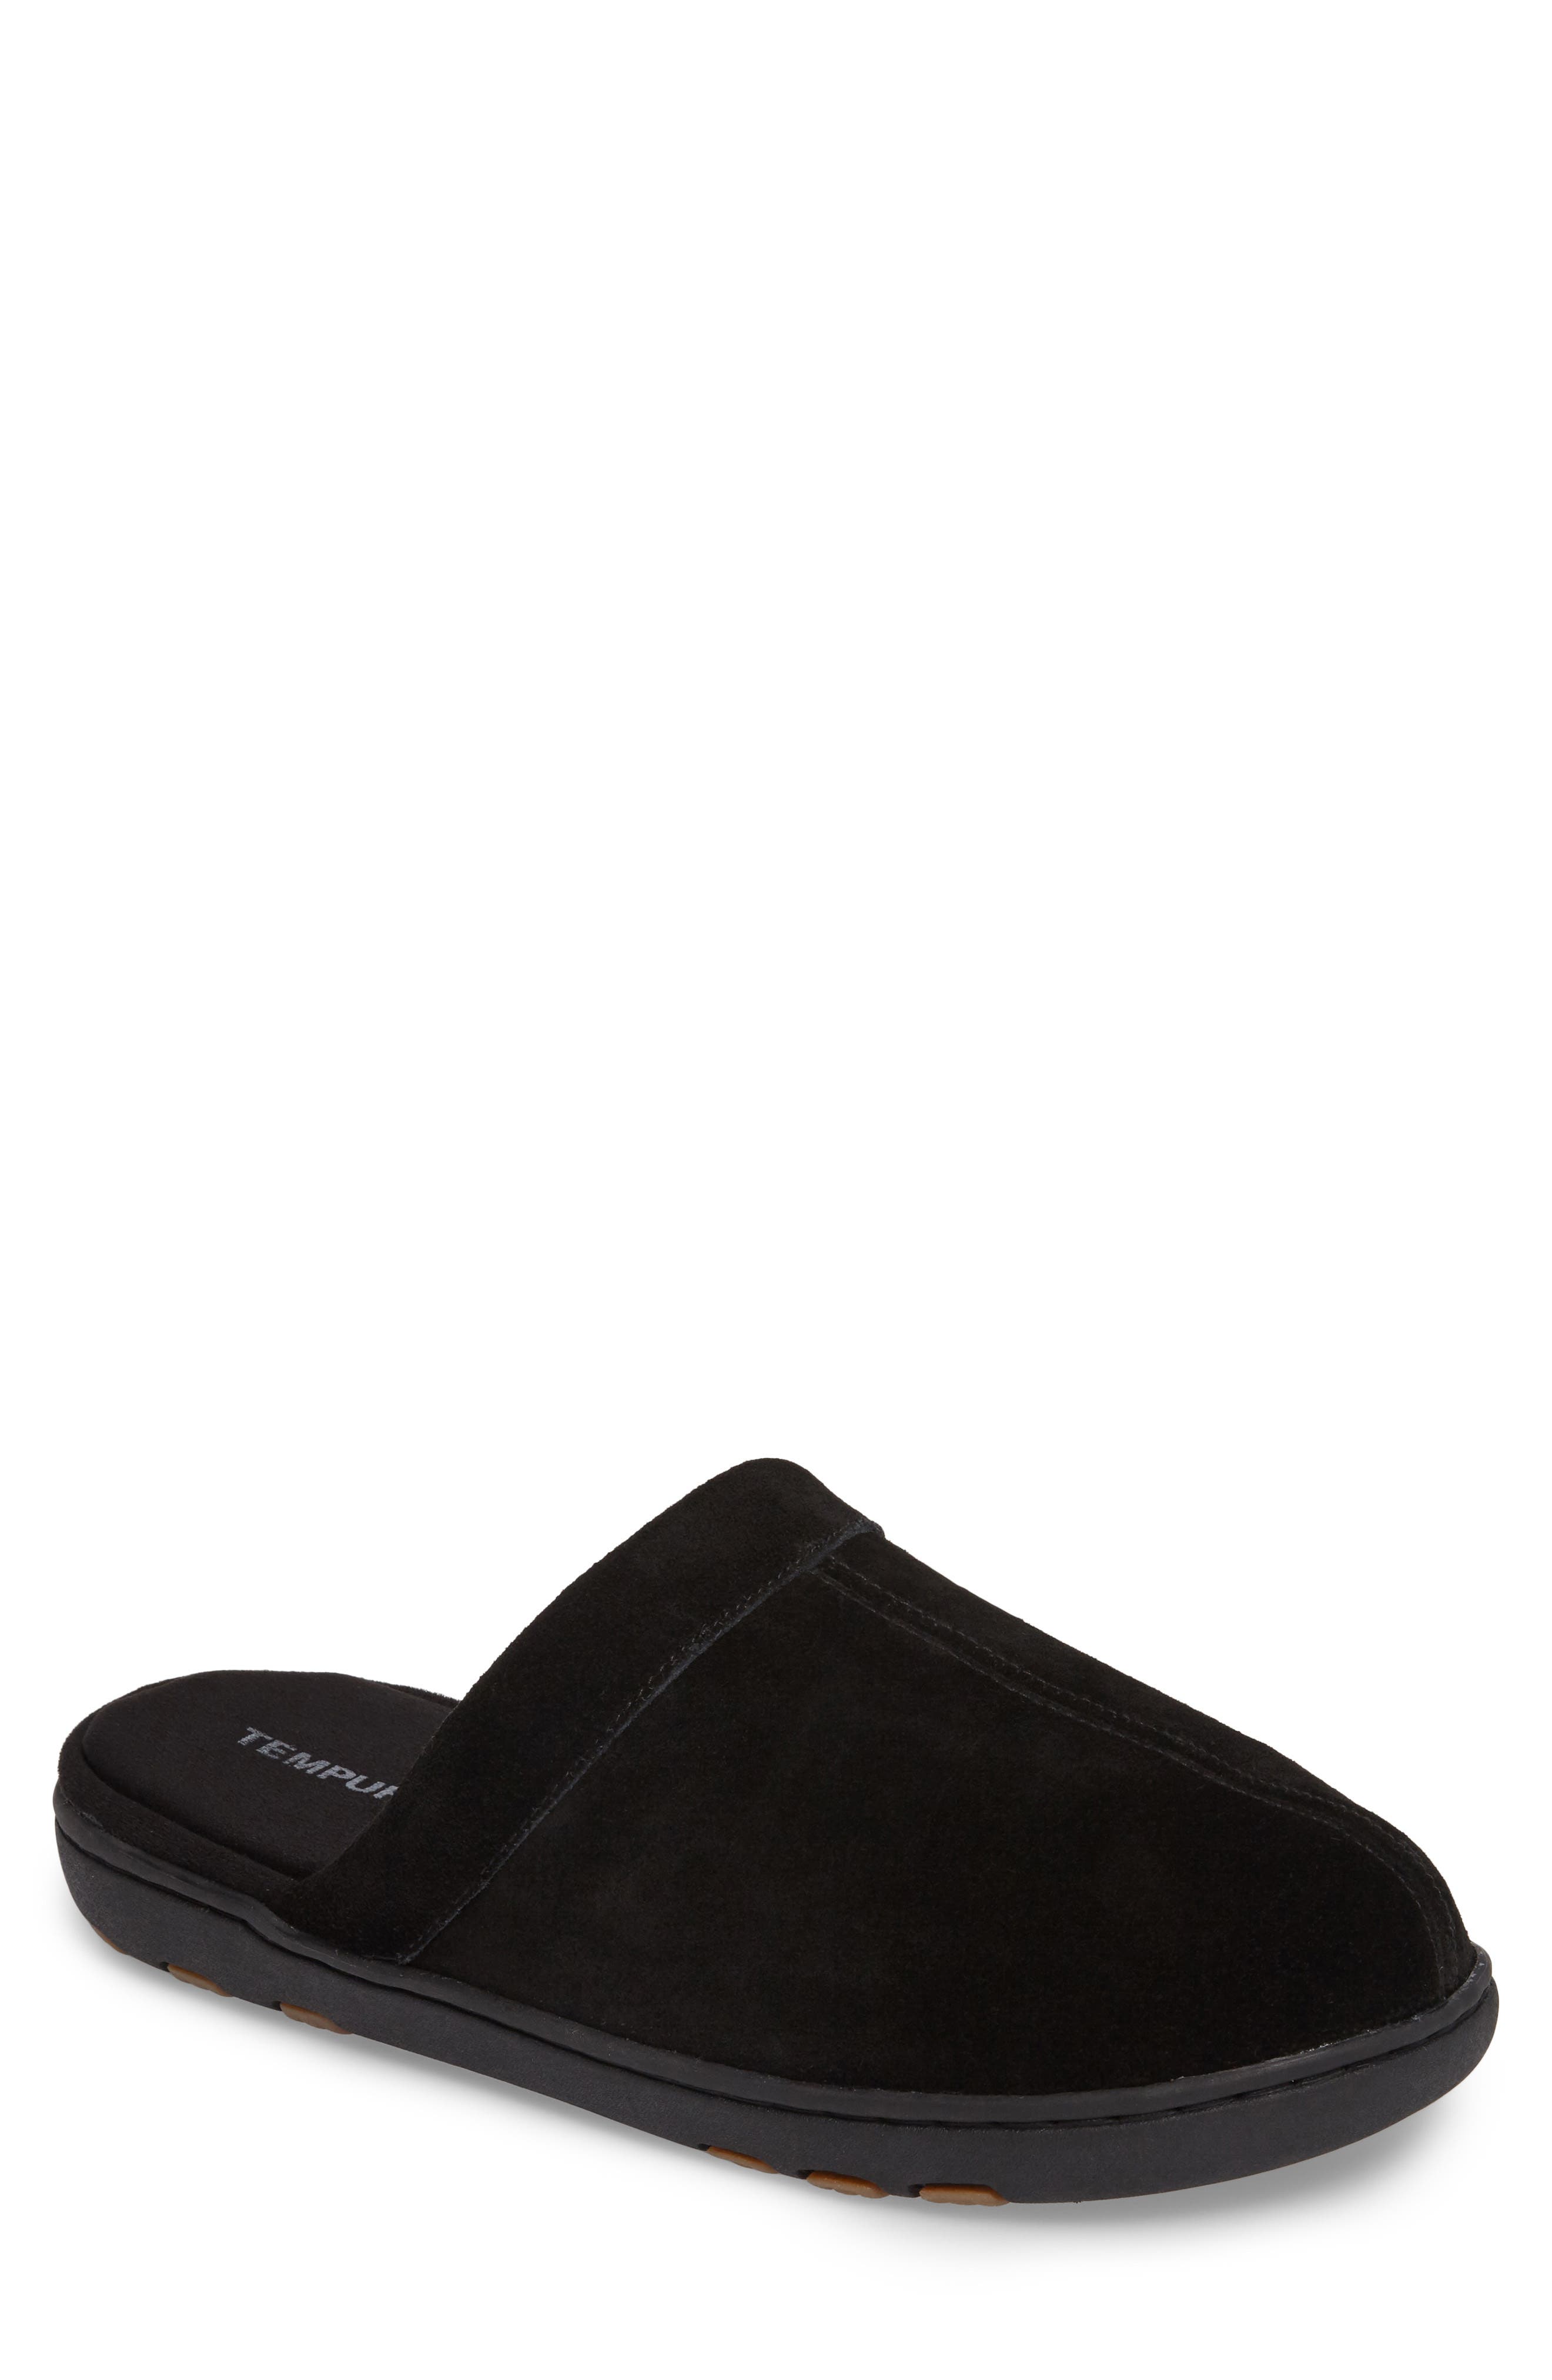 black slip on slippers mens